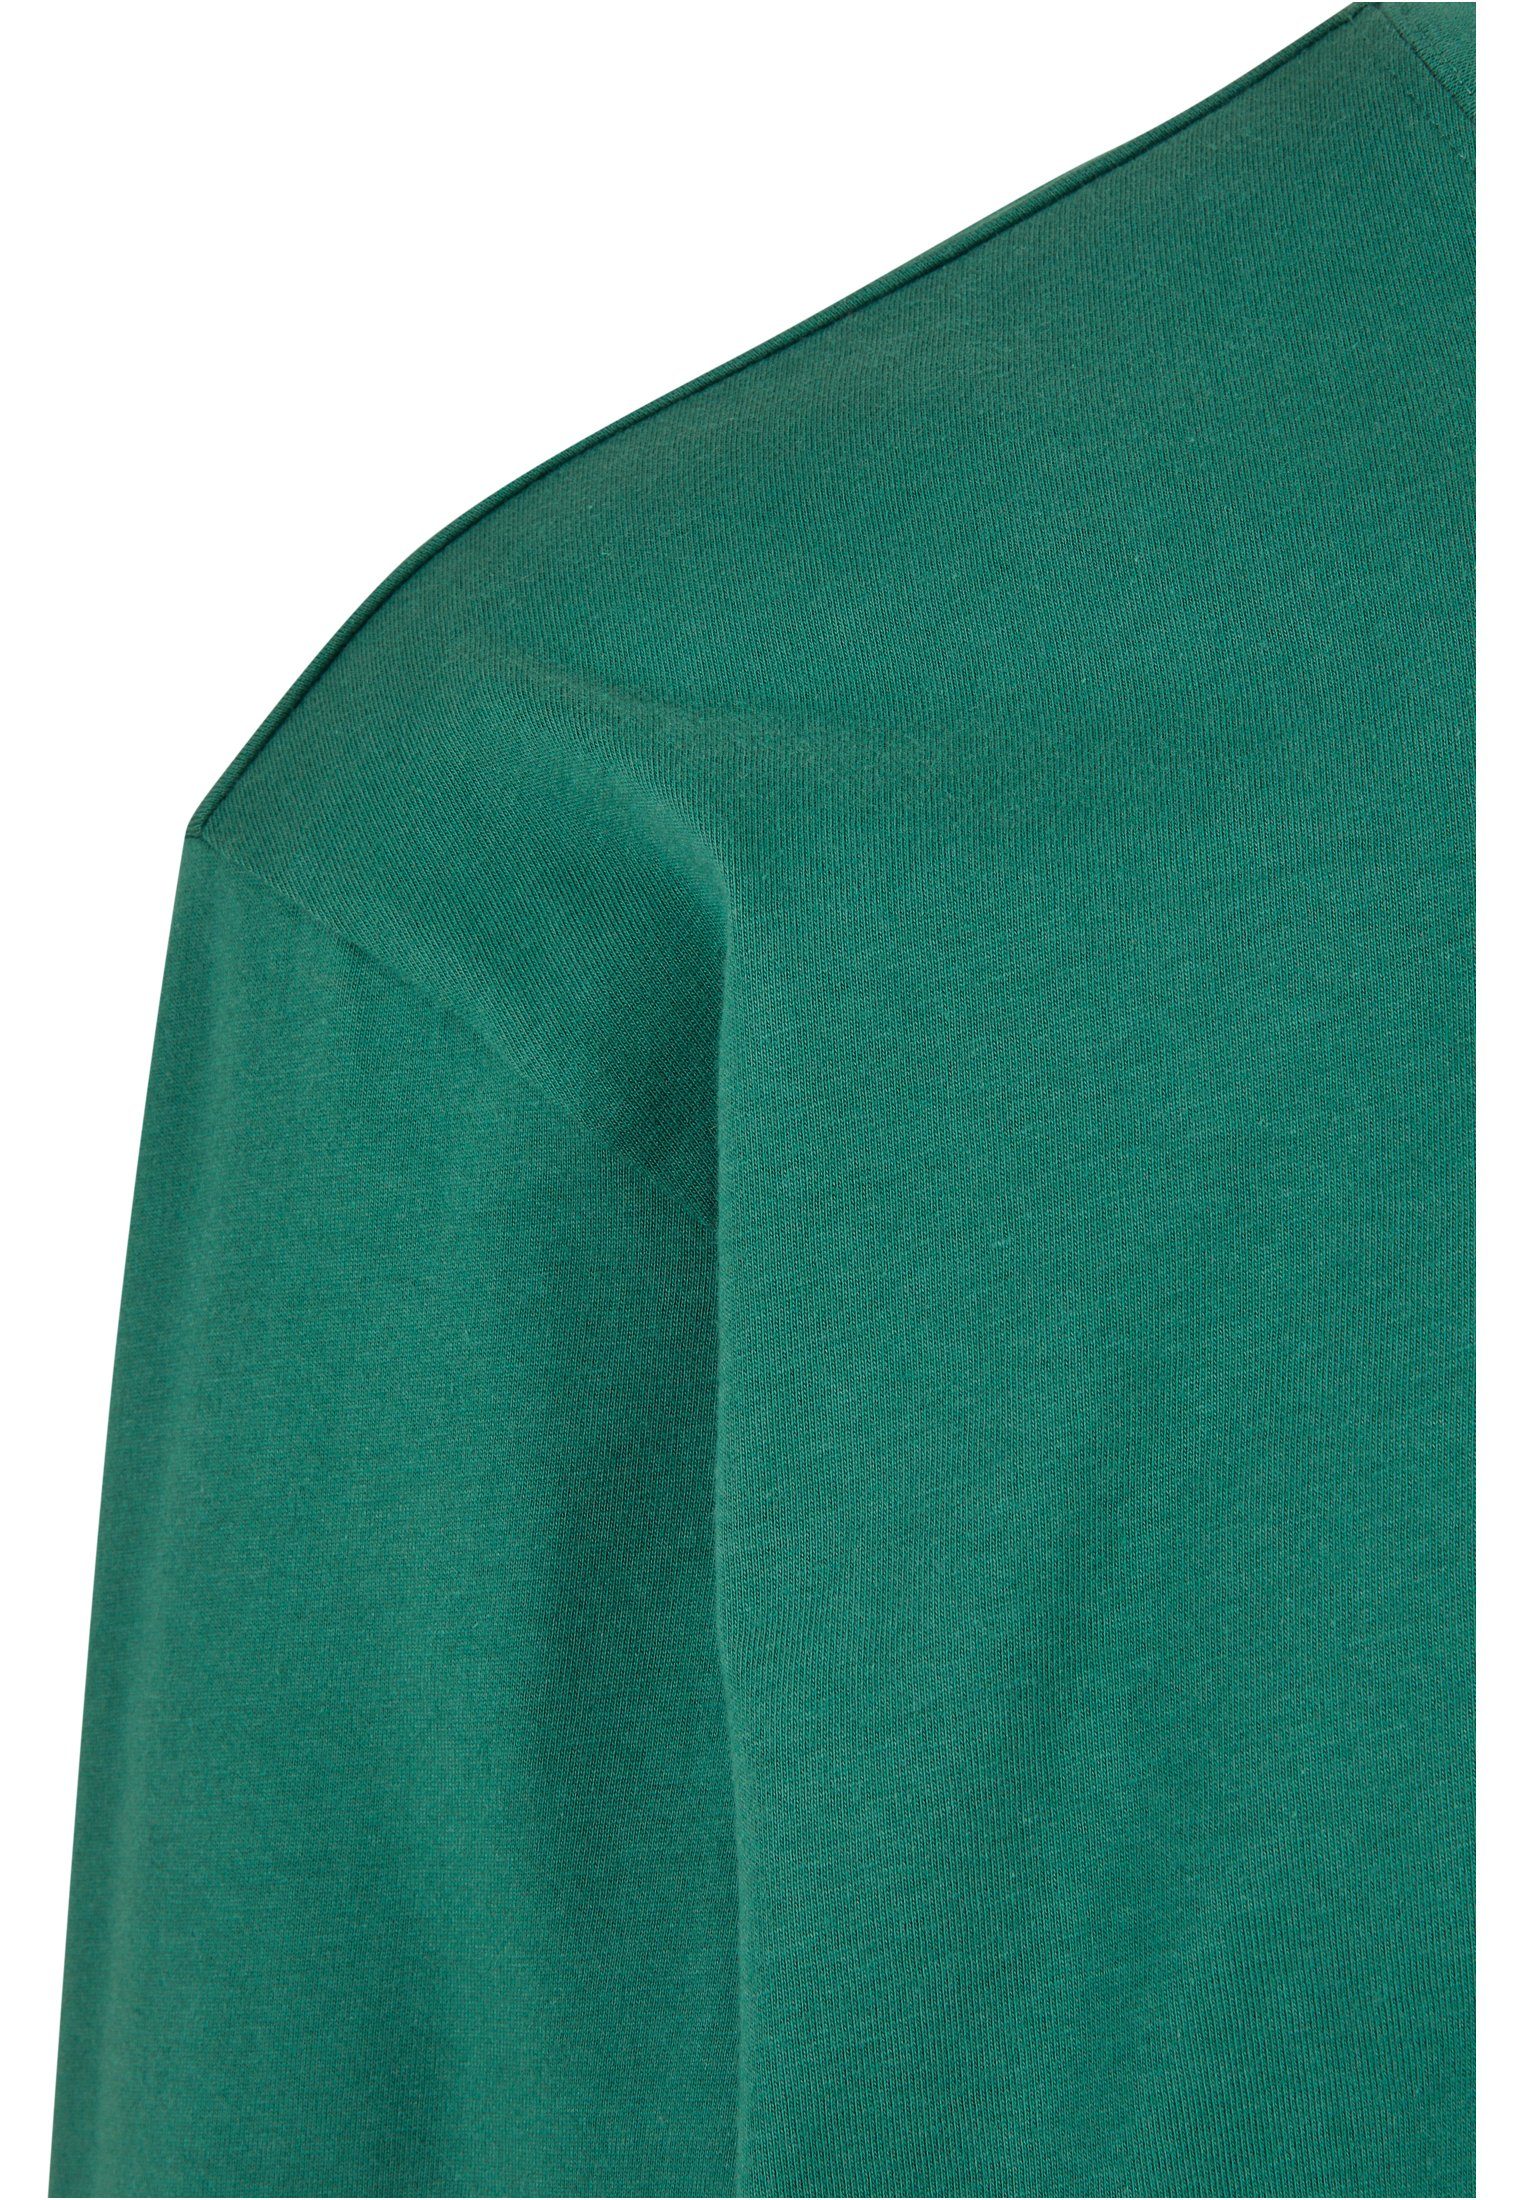 URBAN CLASSICS T-Shirt Herren Tall (1-tlg) leaf Tee L/S